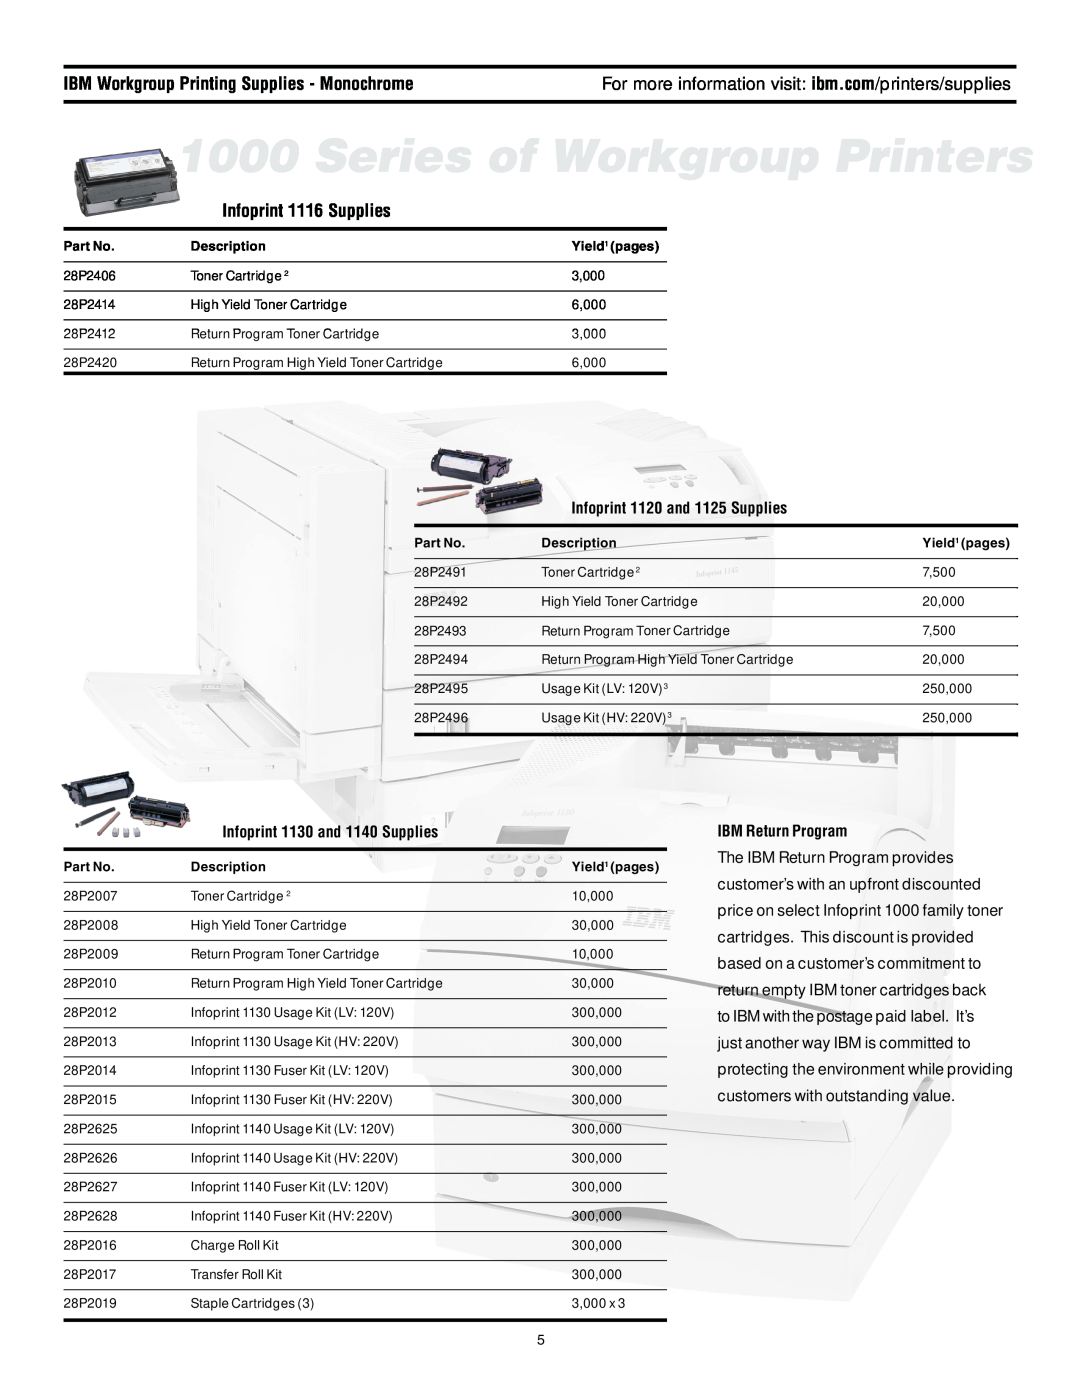 IBM 6400 Infoprint 1116 Supplies, Infoprint 1120 and 1125 Supplies, Infoprint 1130 and 1140 Supplies, IBM Return Program 